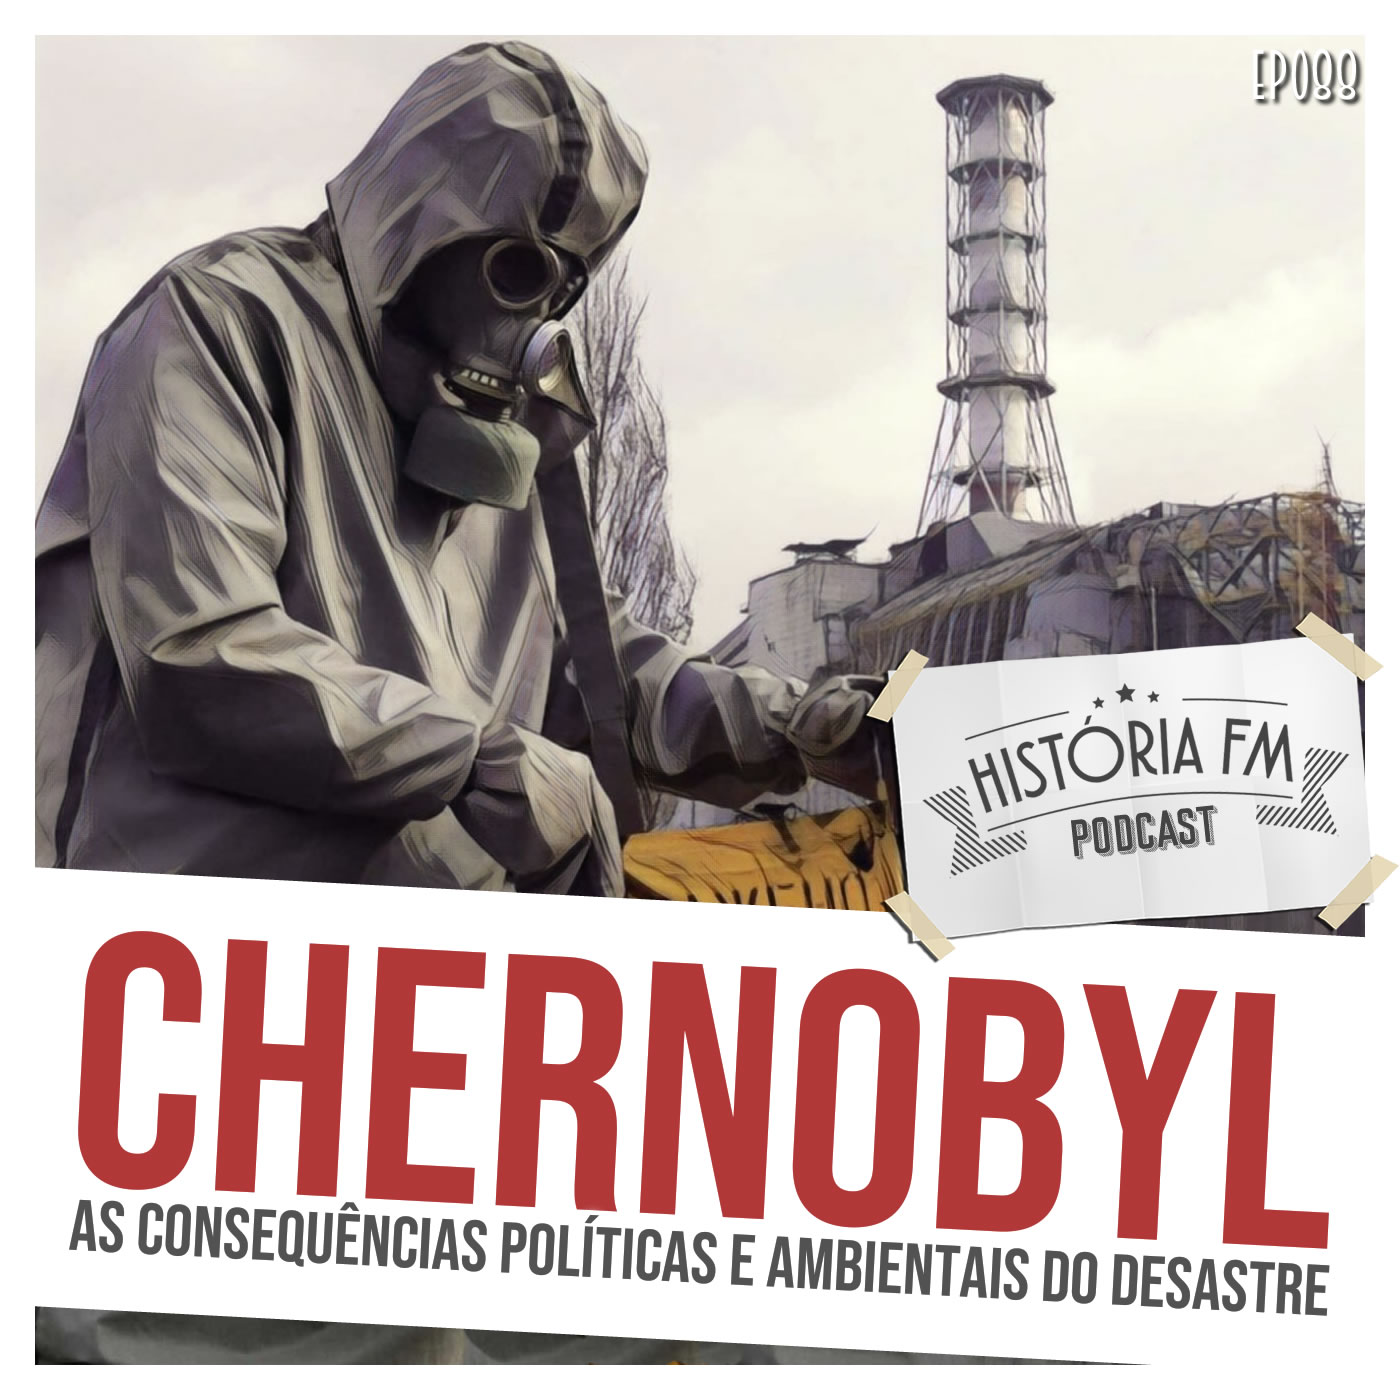 Chernobyl: as consequências políticas e ambientais do desastre